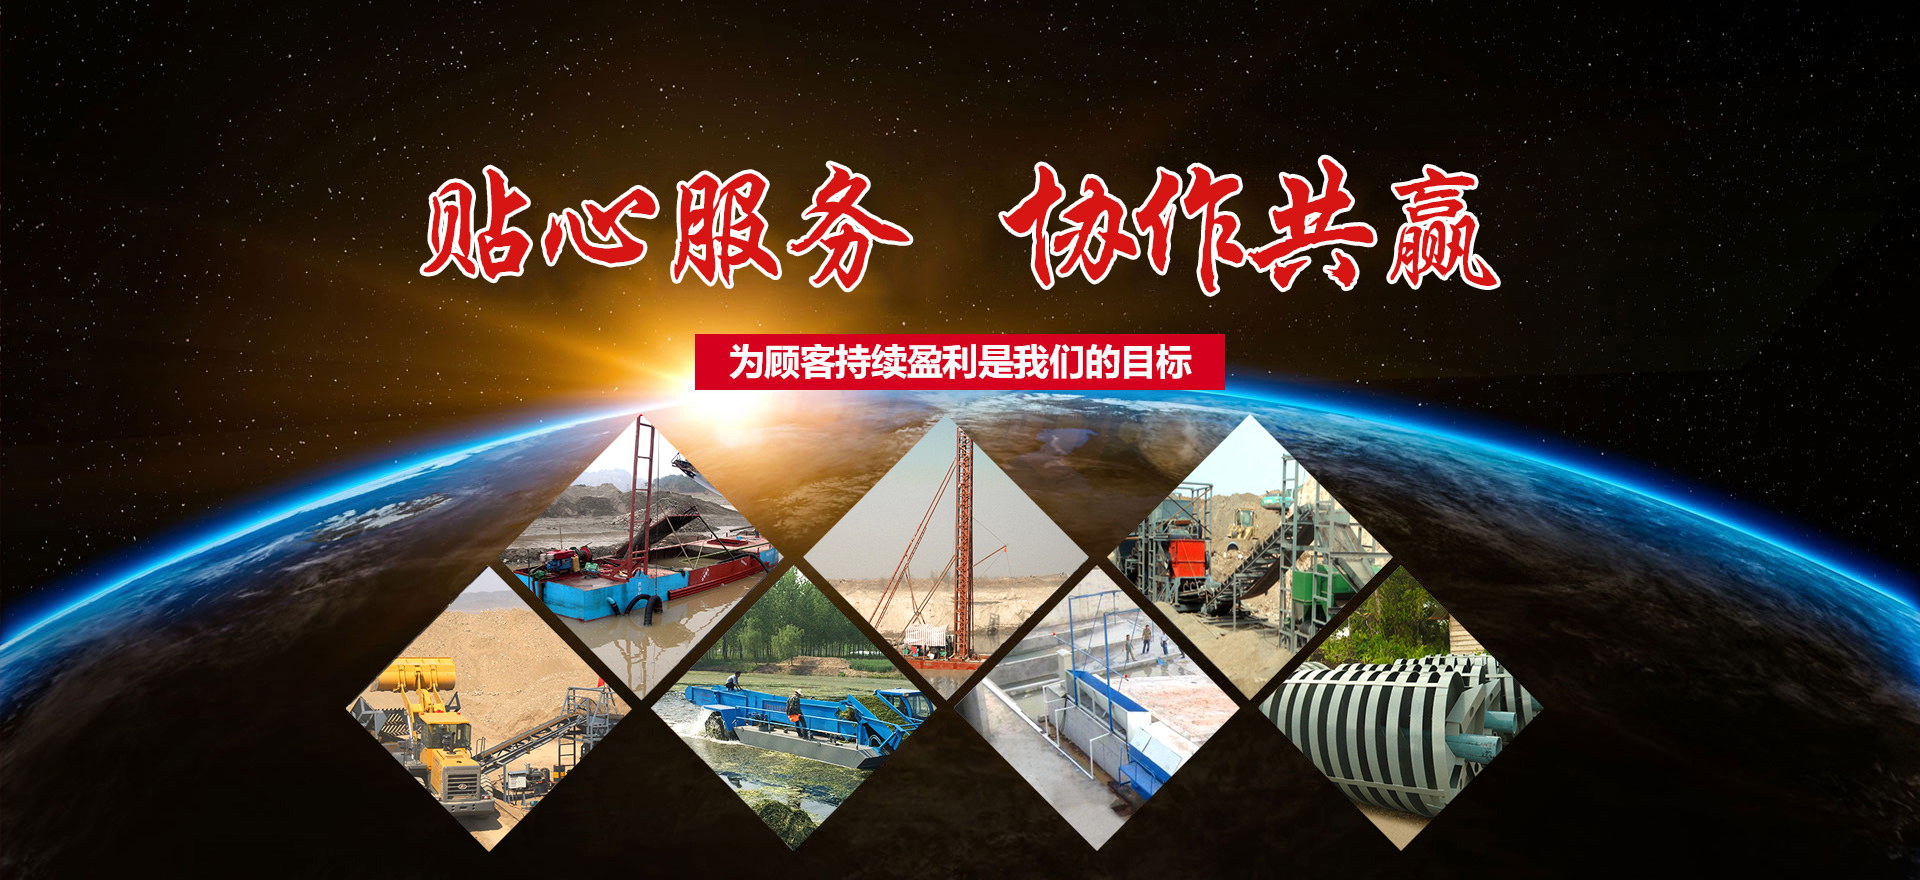 青州市雷舟环保清淤设备有限公司